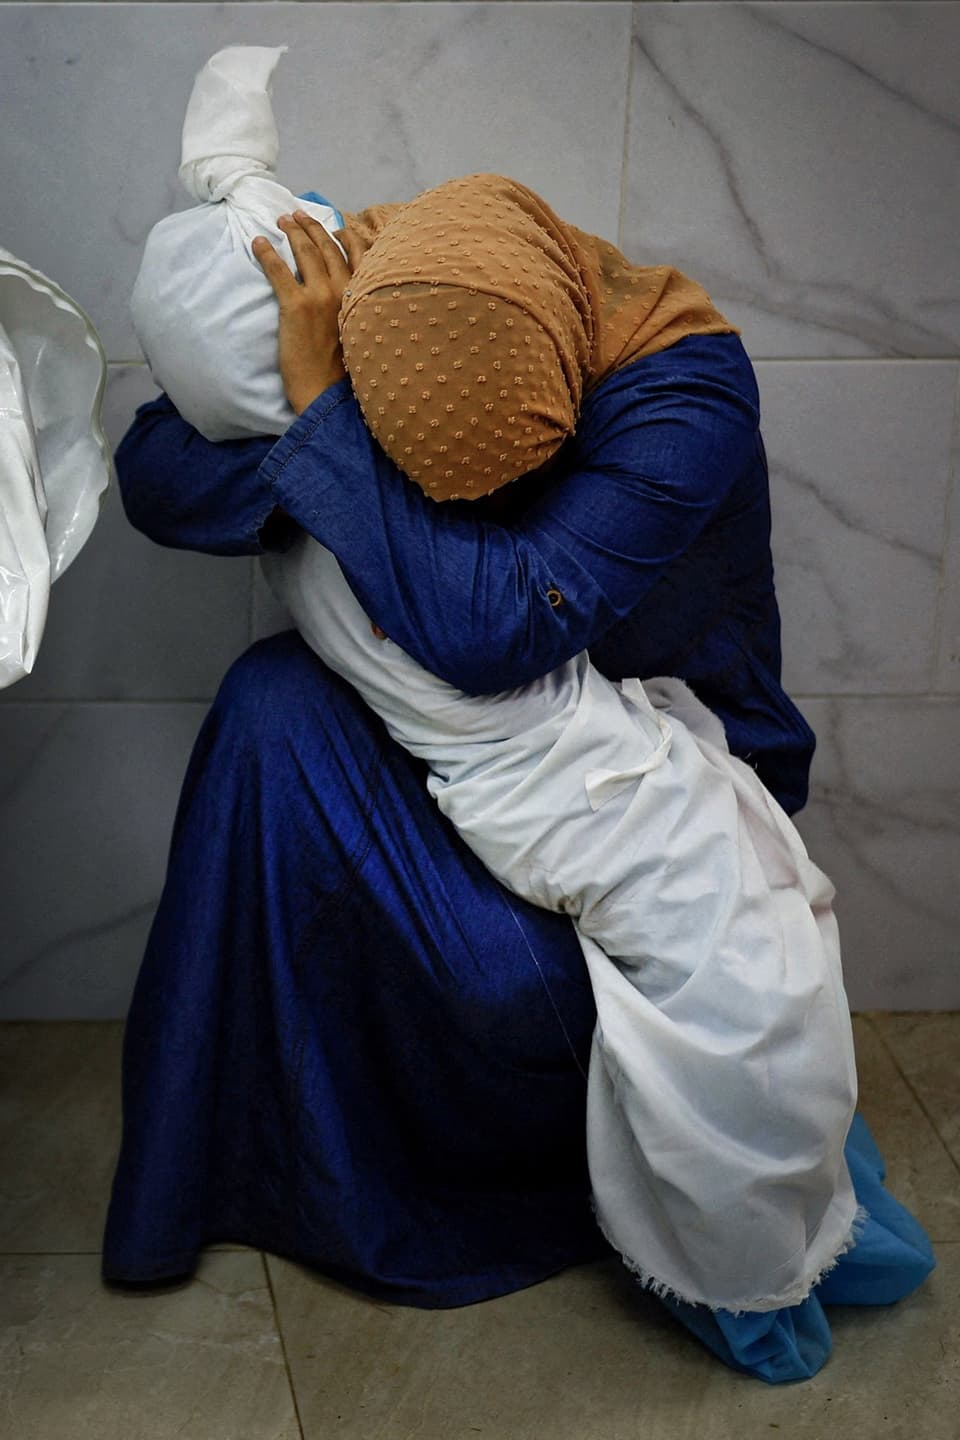 Frau in blauem Kleid und mit orangem Kopftuch, umarmt in Laken eingewickelte Leiche